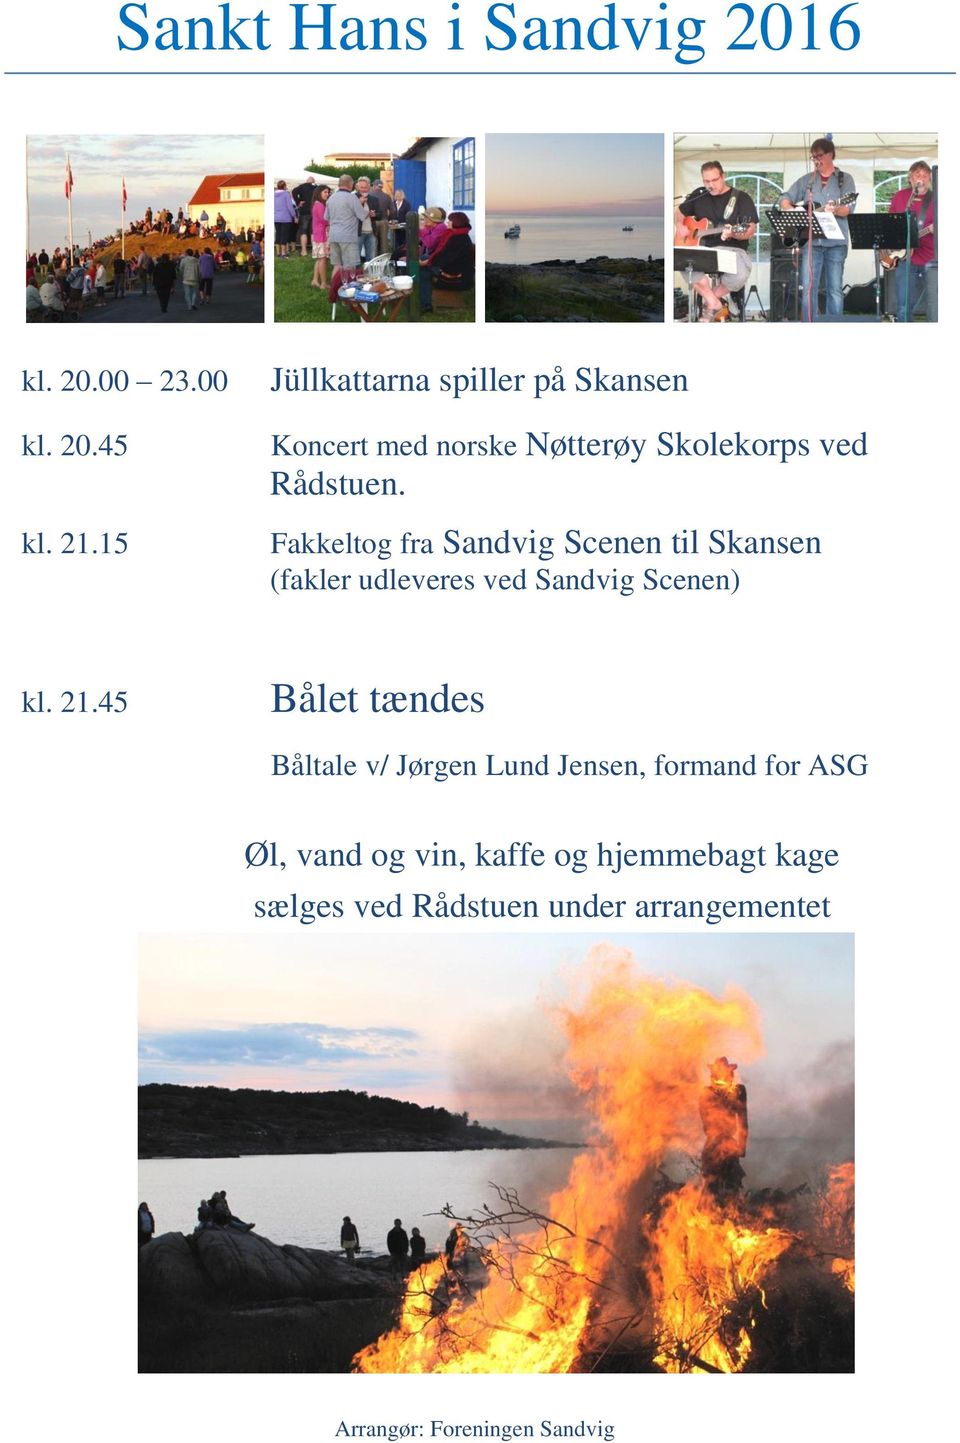 Fakkeltog fra Sandvig Scenen til Skansen (fakler udleveres ved Sandvig Scenen) kl. 21.